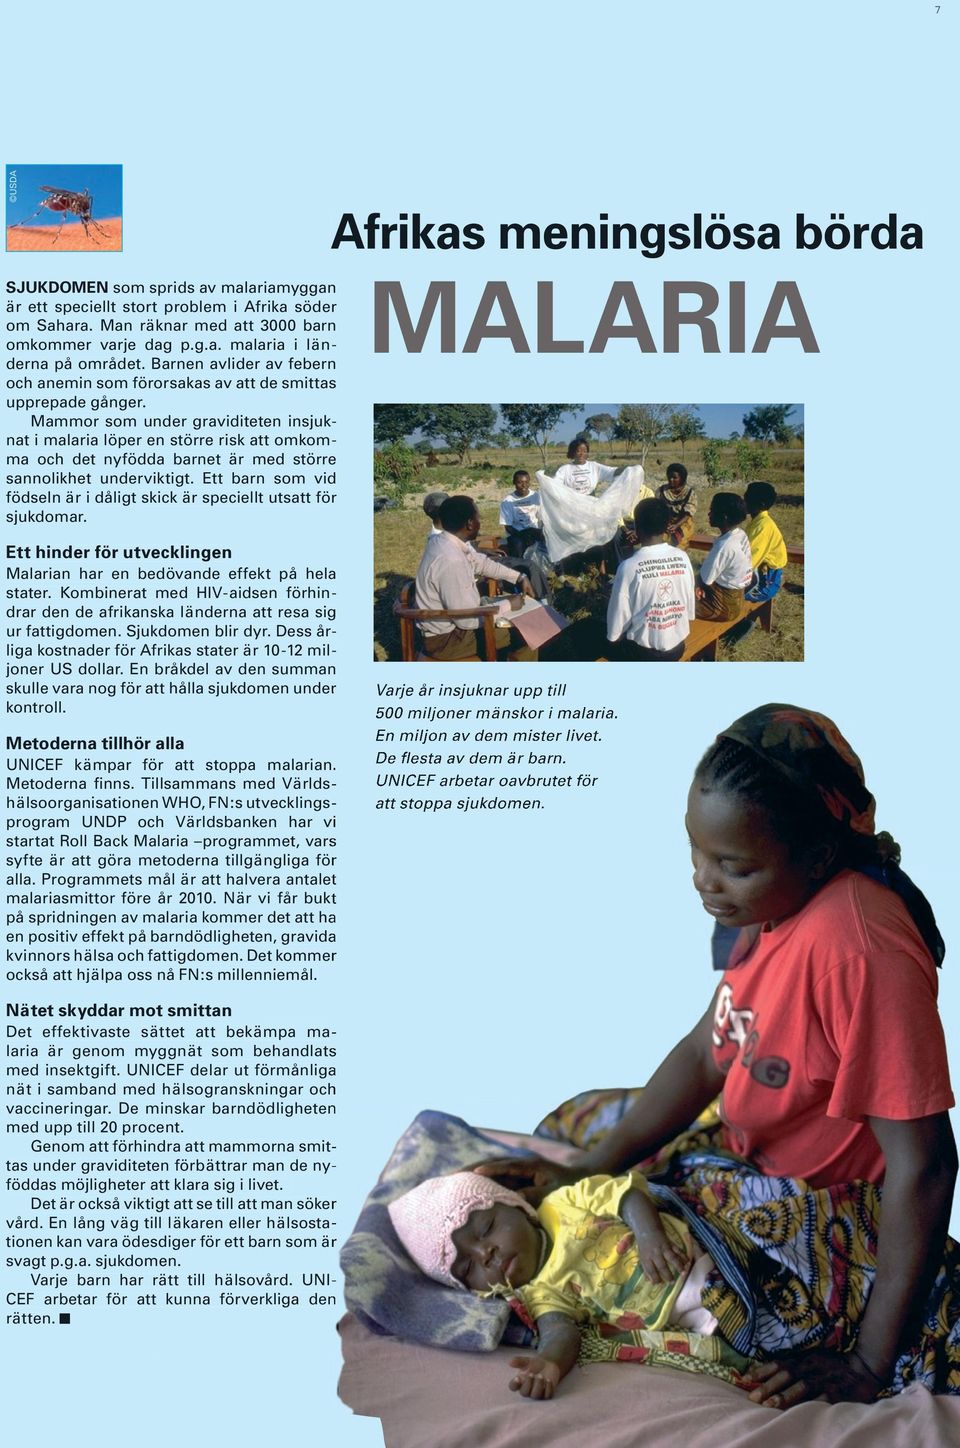 Mammor som under graviditeten insjuknat i malaria löper en större risk att omkomma och det nyfödda barnet är med större sannolikhet underviktigt.